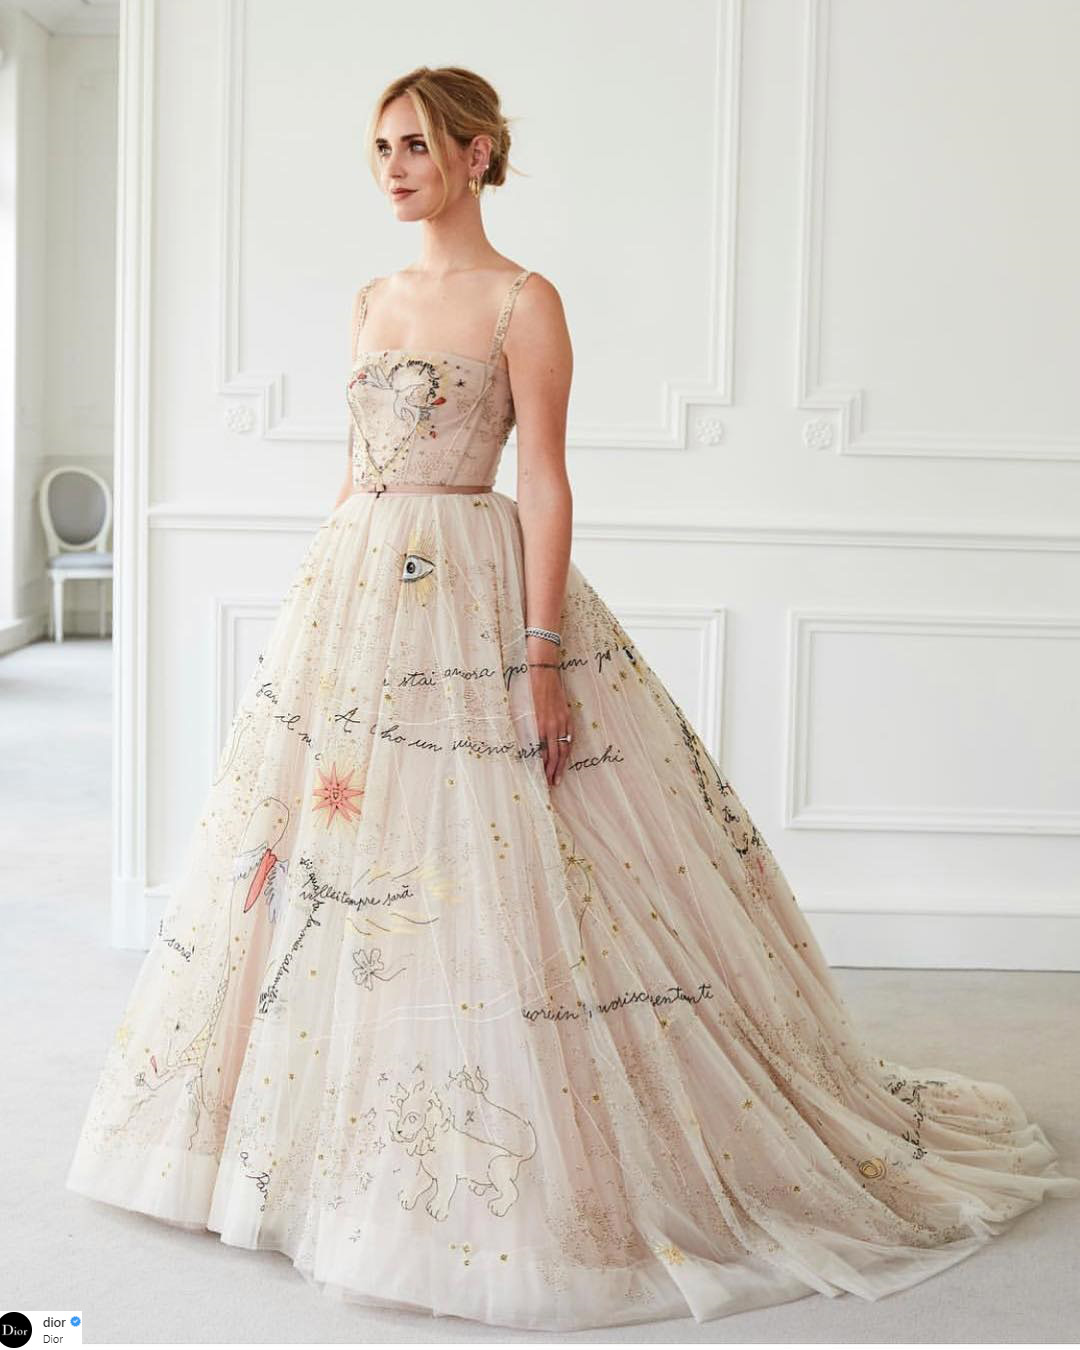 Nữ blogger được giám đốc Dior thiết kế cho 3 chiếc váy cưới  Ngôi sao